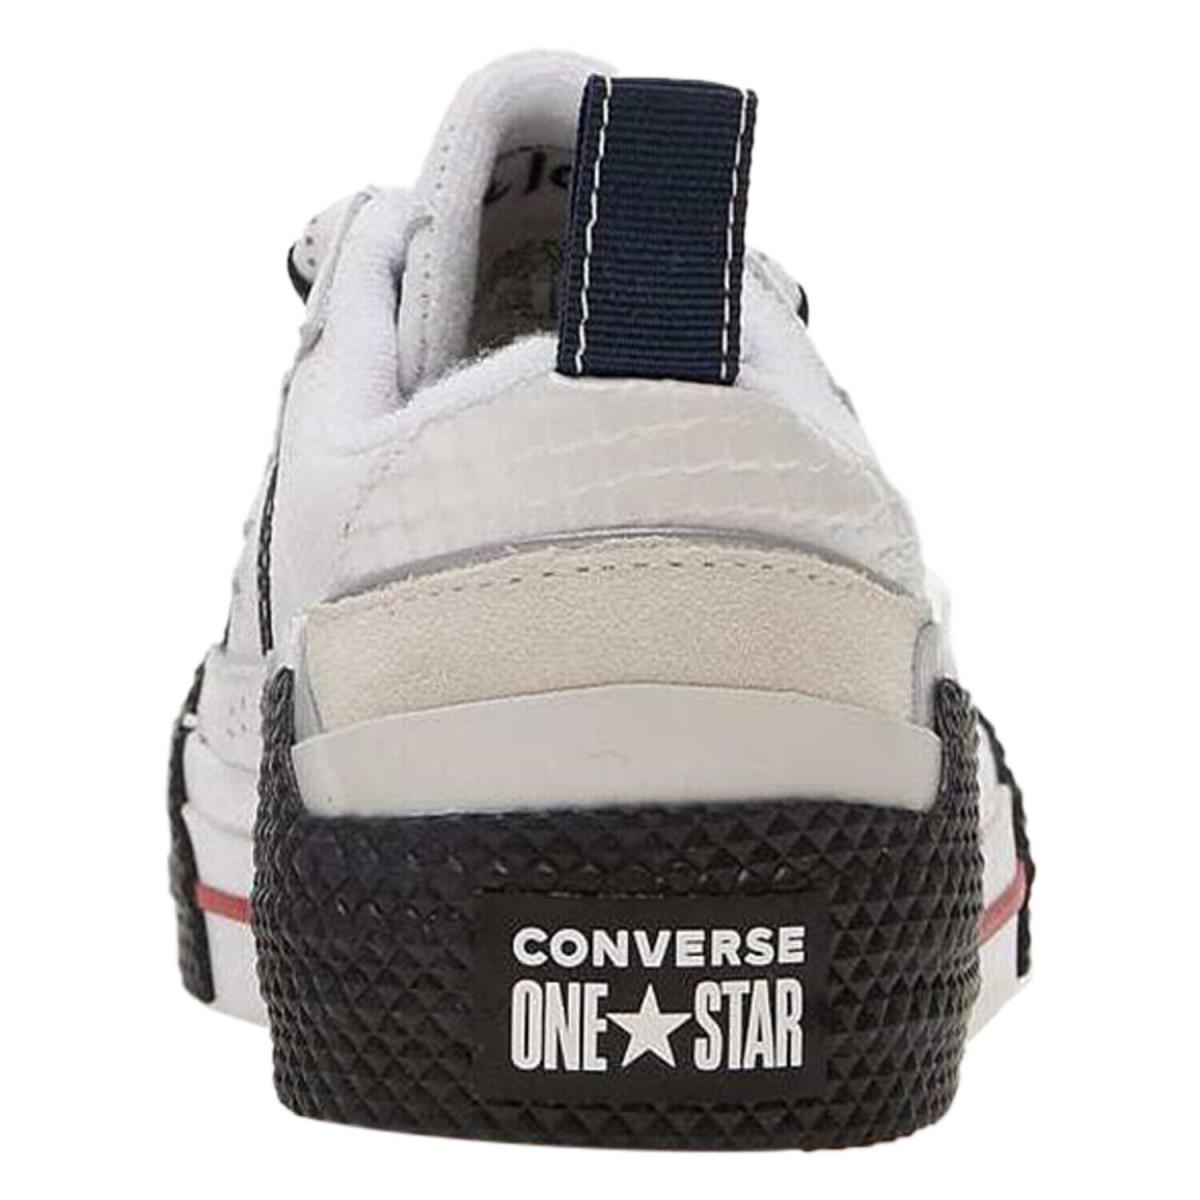 Converse One Star OX Ibn Jasper White - White/Black-White